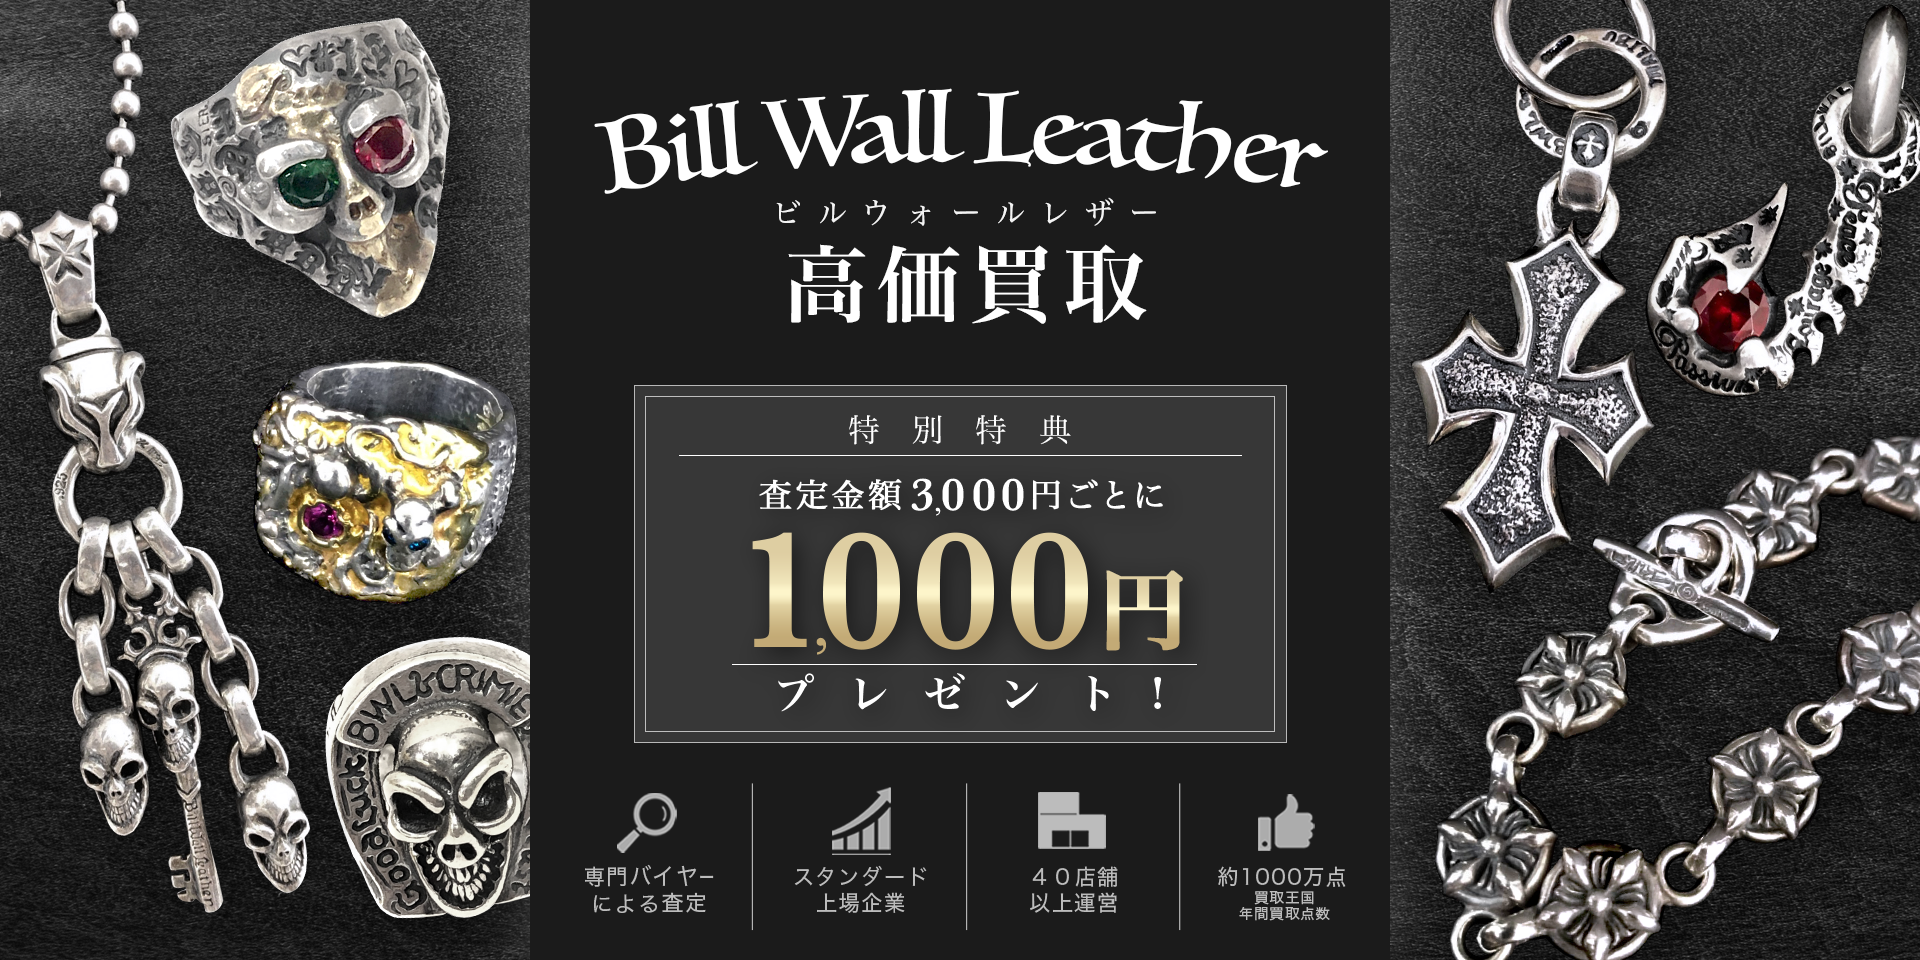 Bill Wall Leatherのキービジュアル